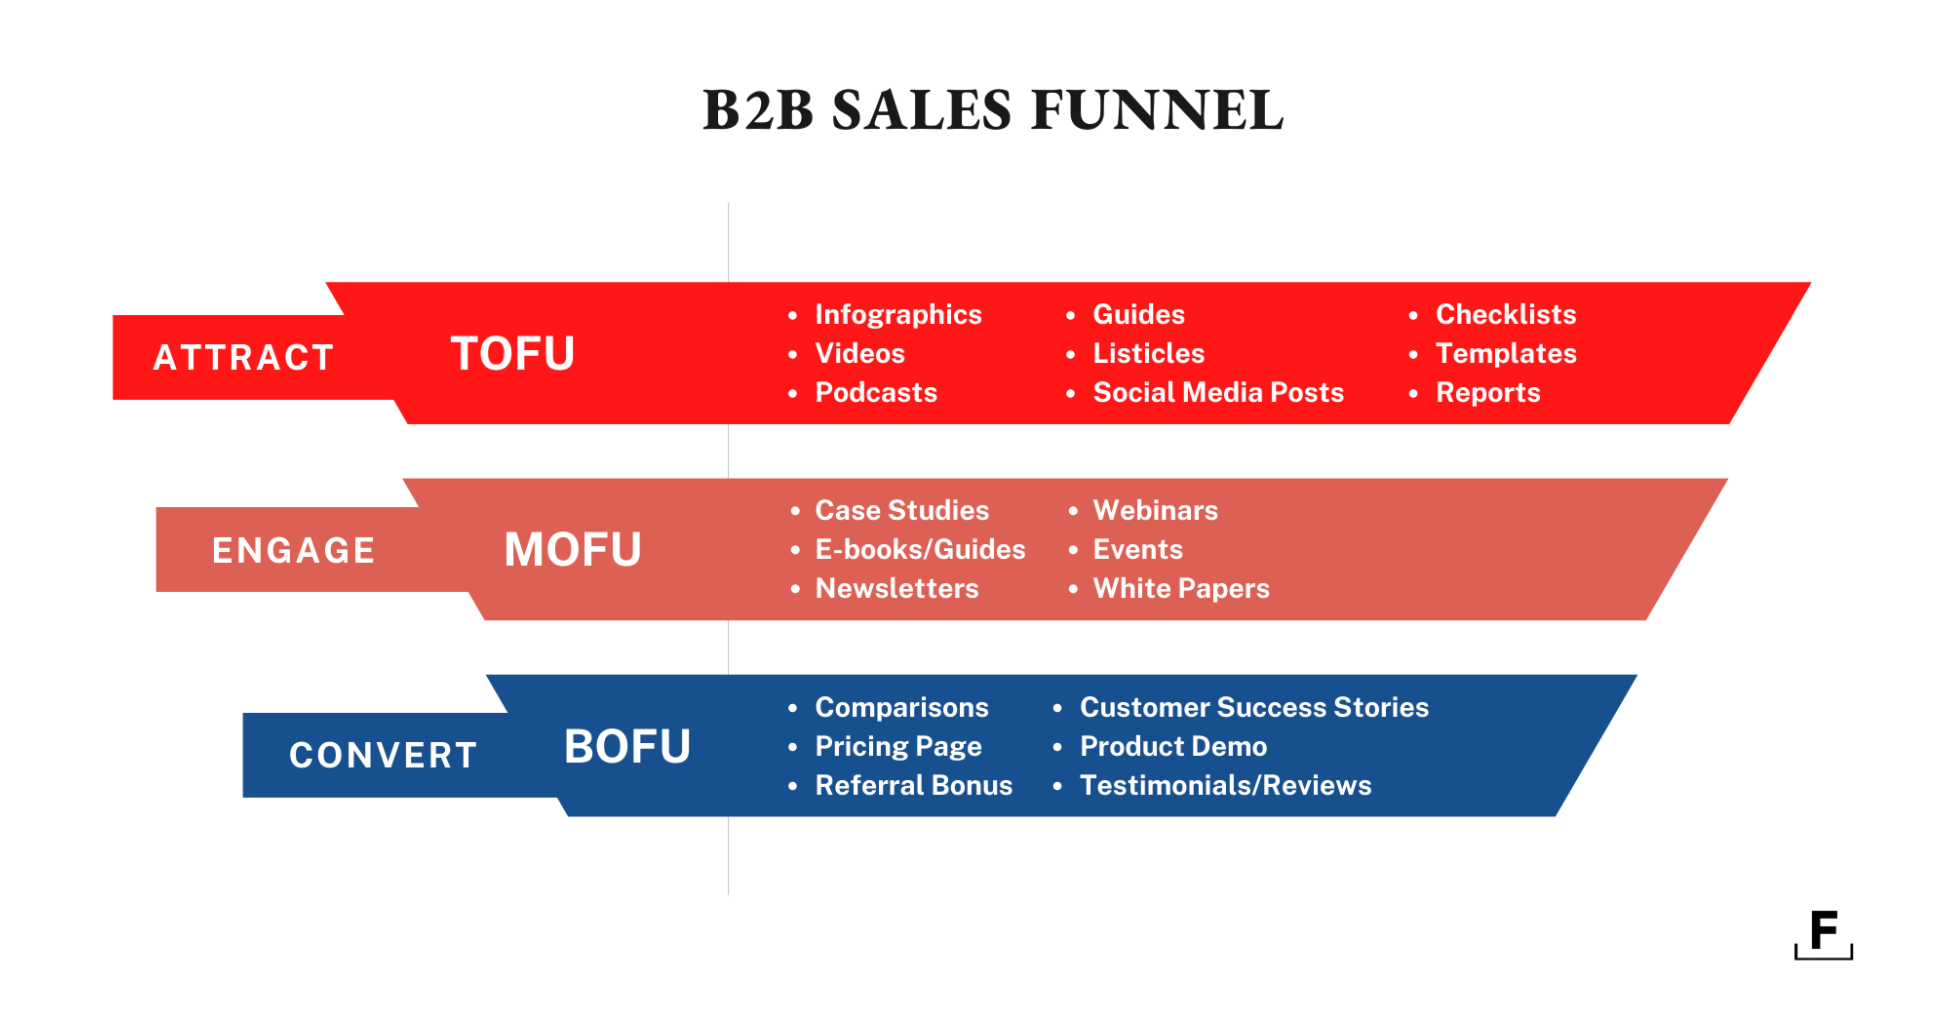 Foundation B2B Sales Funnel